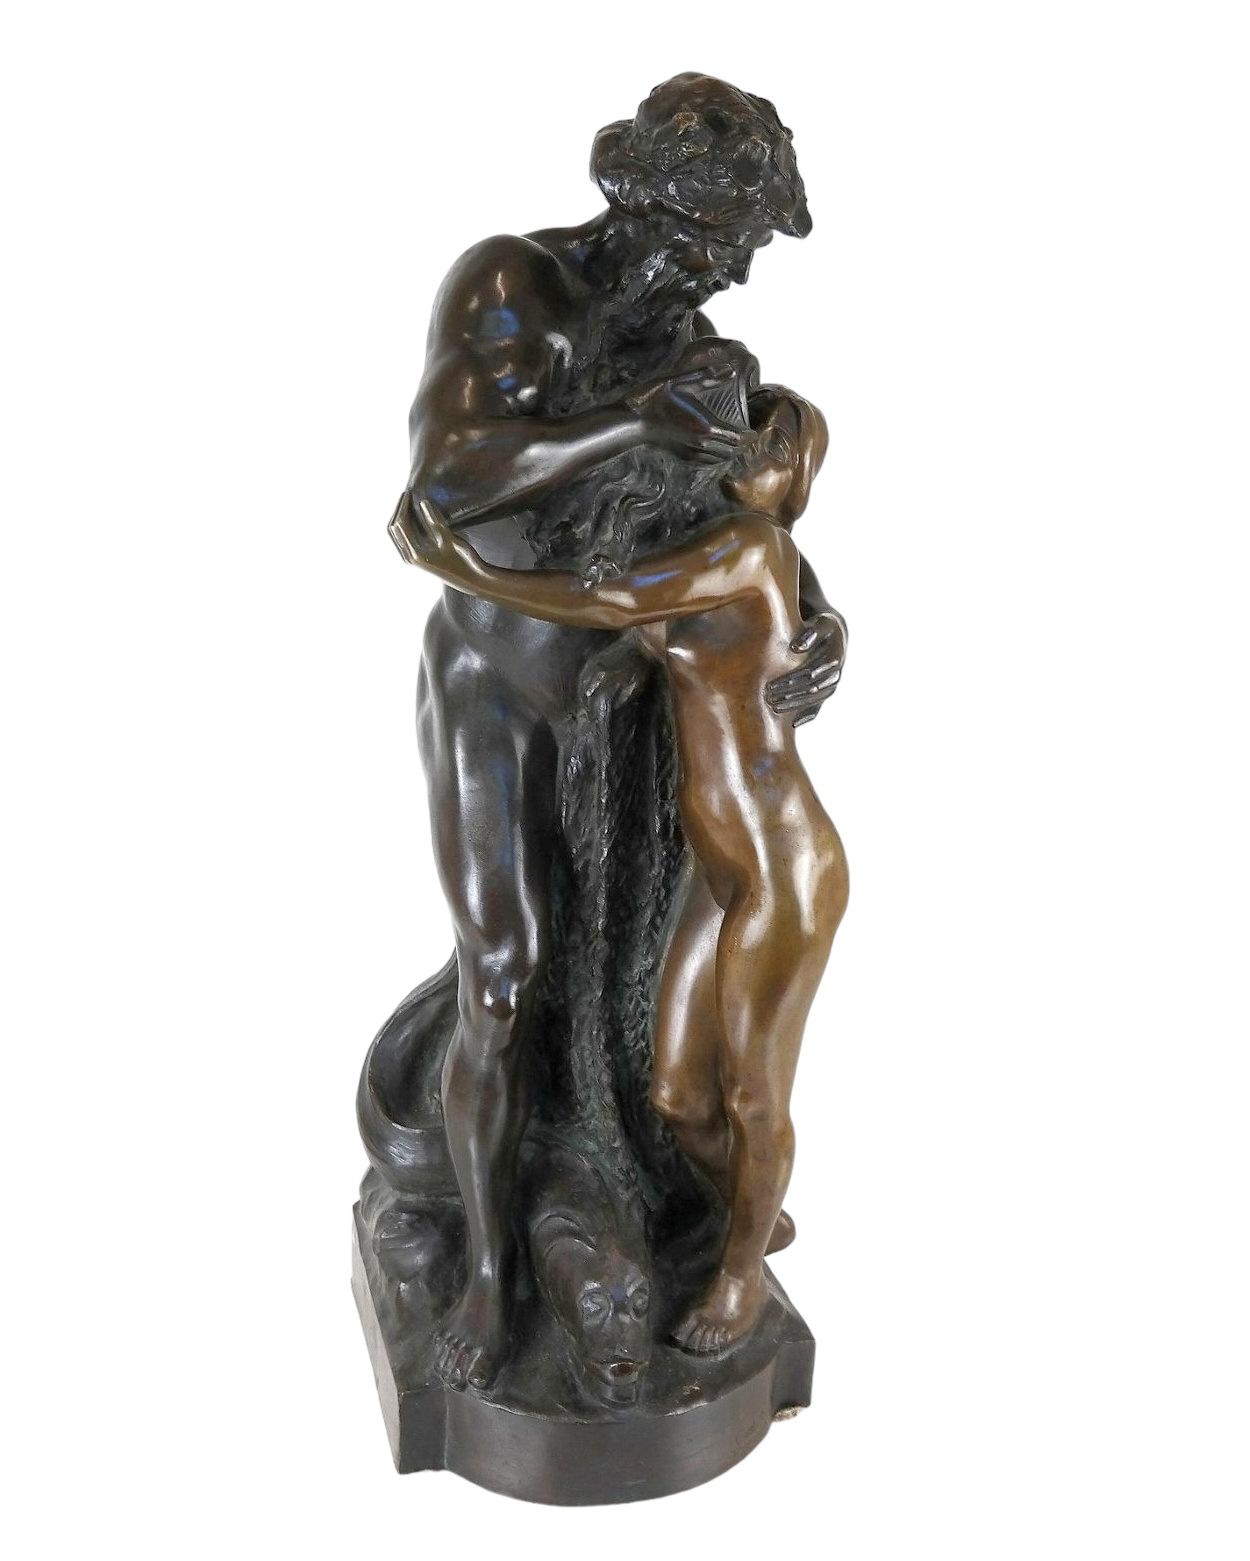 Notre sculpture en bronze de Karl Gustav Rutz (allemand, 1857-1949) représente le dieu et la déesse grecs Poséidon et Amphitrite.  Signé Gust. Rutz Dusseldorf 1911. et Bronzeguss v. G. Schroder Dusseldorf.

Dans la mythologie grecque, Poséidon, le